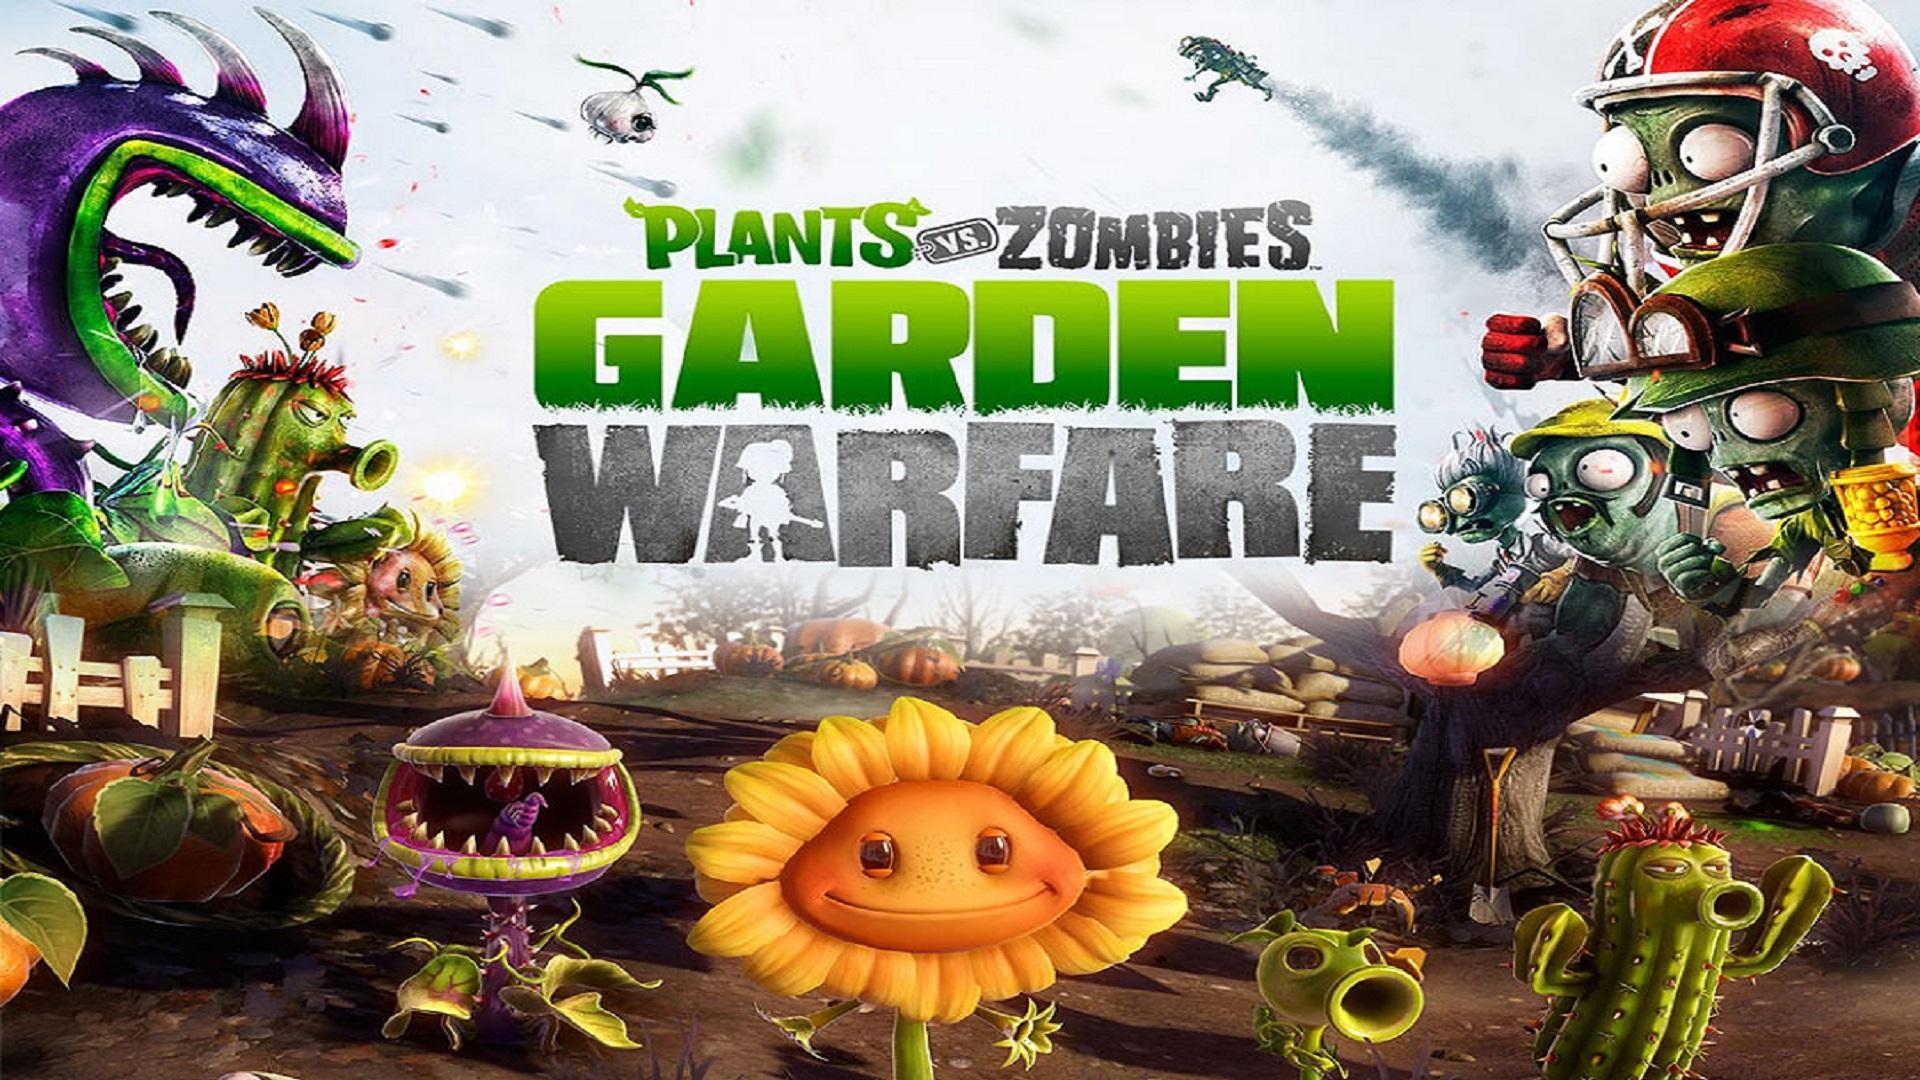 Зомби против 21. Plants vs. Zombies игры. Plants vs. Zombies-2009 обложка. Plants vs. Zombies Garden Warfare 2. Plants vs Zombies 1 Постер.